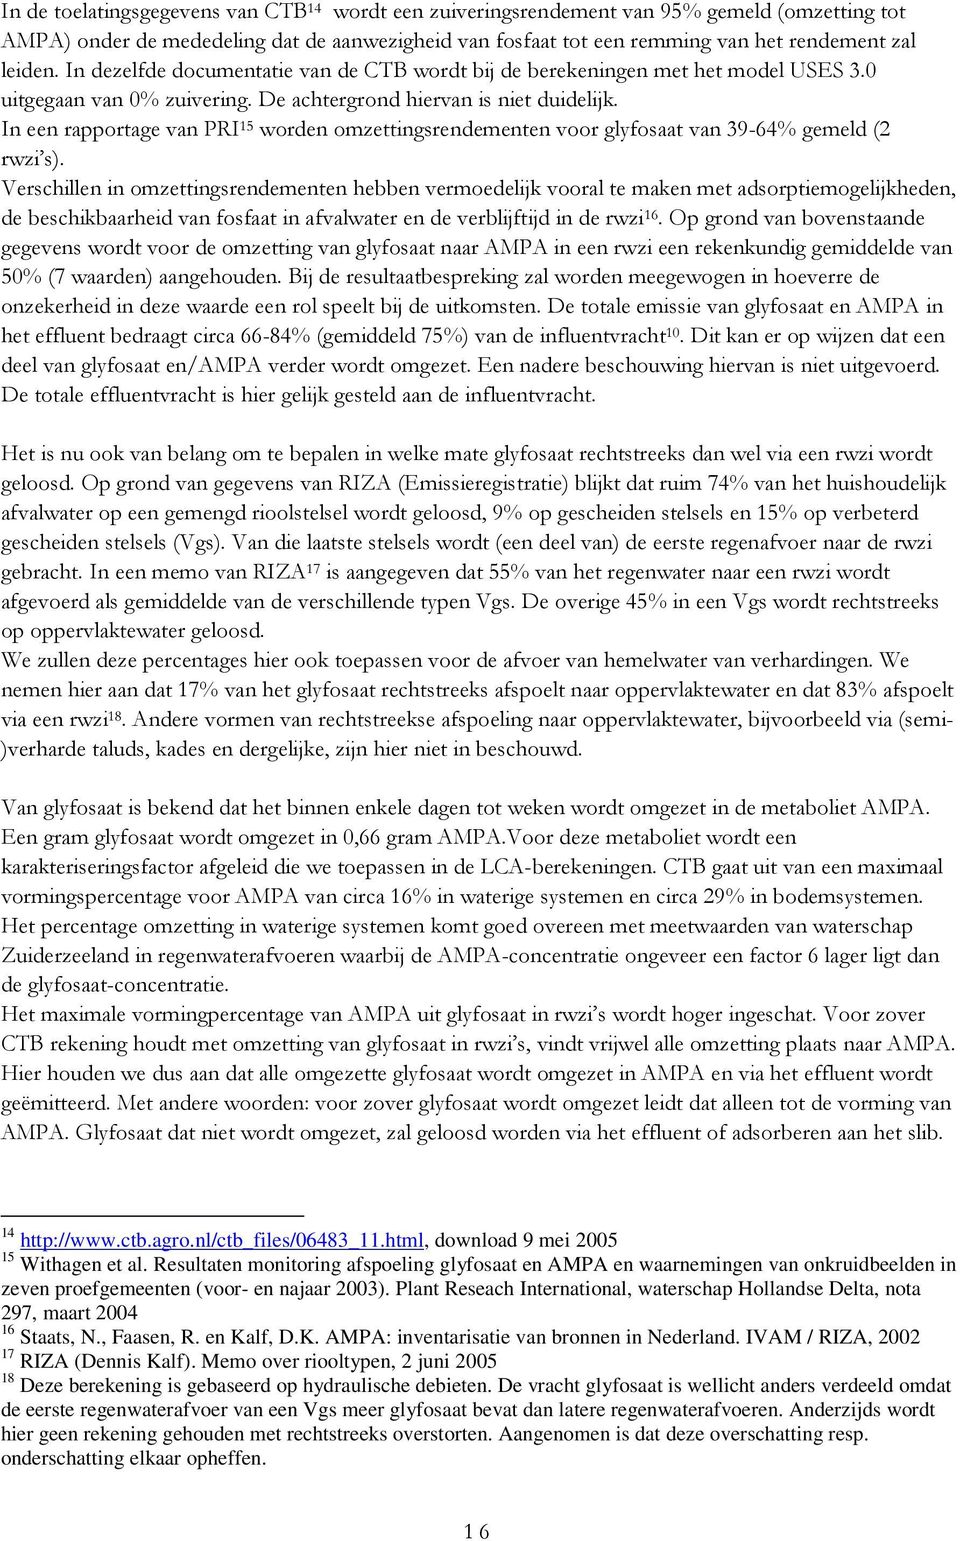 In een rapportage van PRI 15 worden omzettingsrendementen voor glyfosaat van 39-64% gemeld (2 rwzi s).